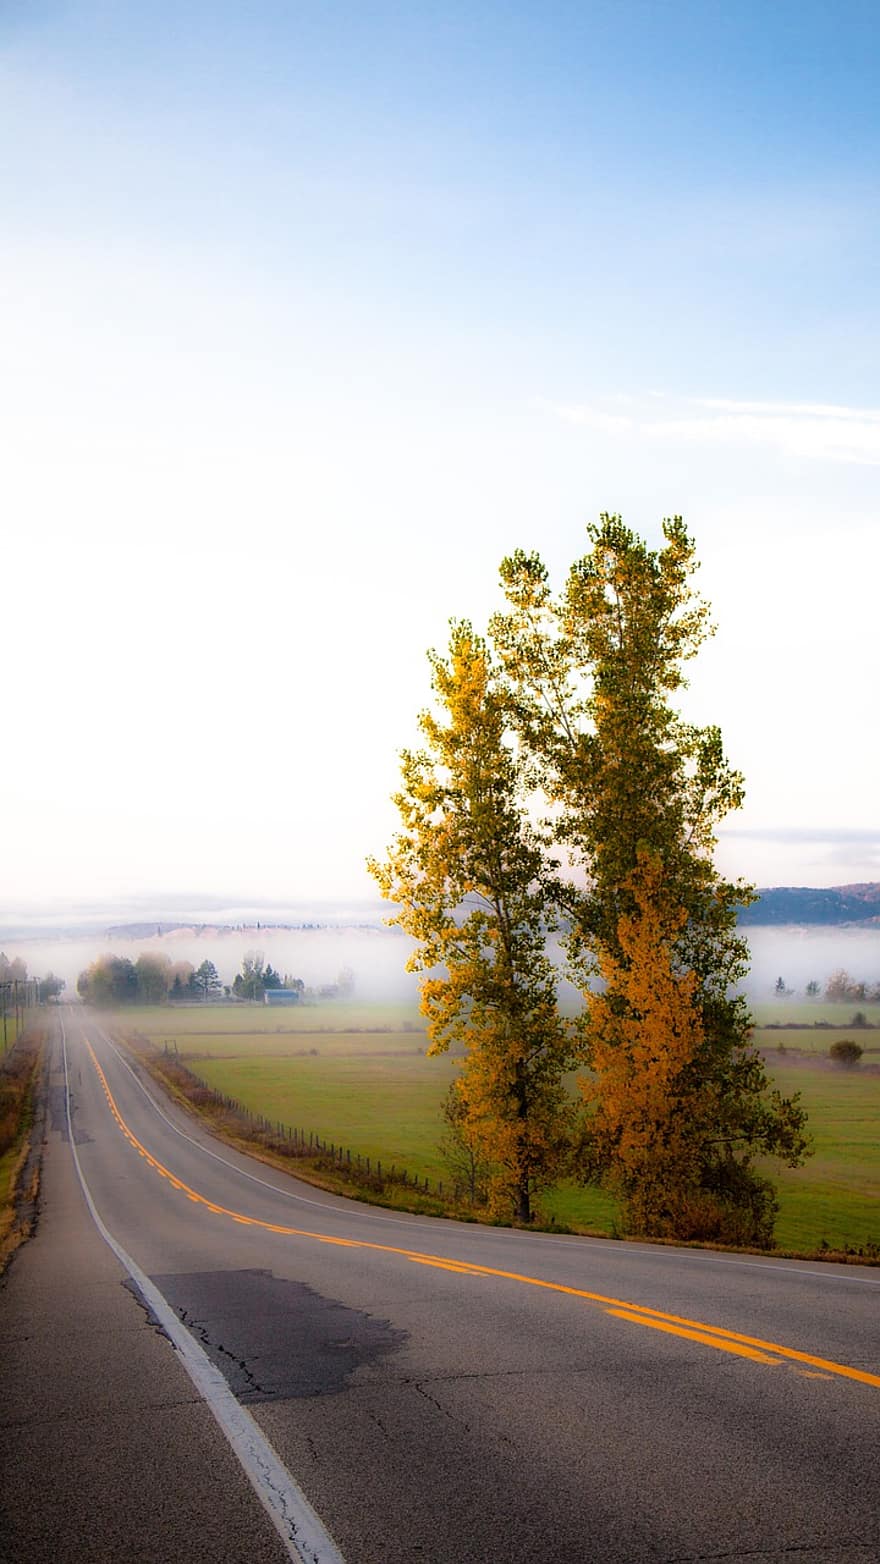 الطريق ، خريف ، شجرة ، حقل ، الخريف ، المناظر الطبيعيه ، ضباب ، الأفق ، كيبيك ، كندا